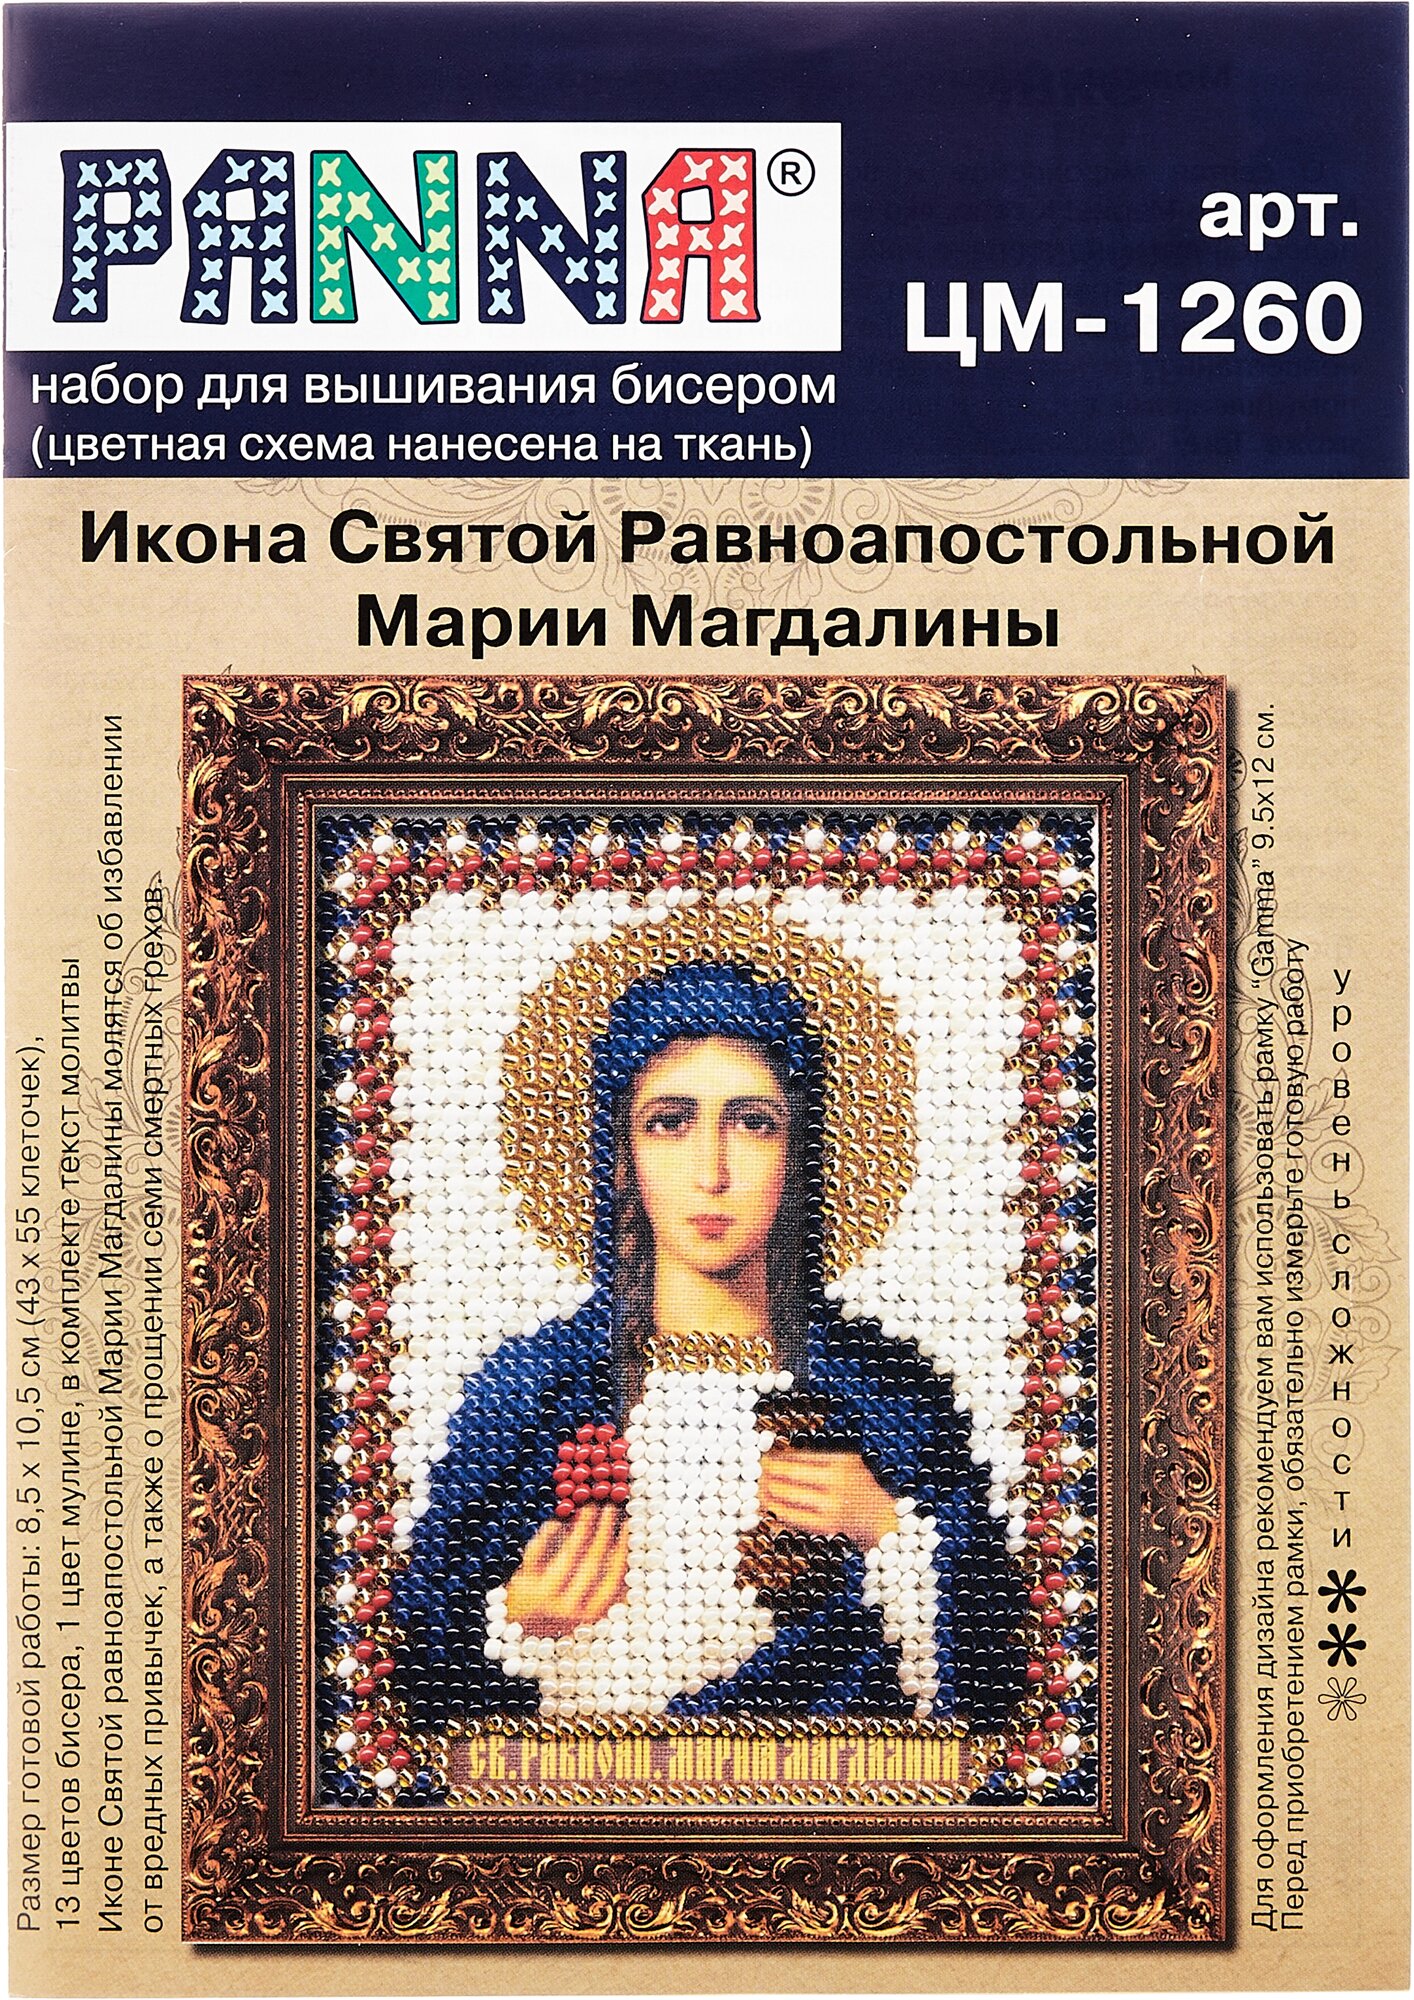 ЦМ-1260 "Икона Св. Равноапостольной Марии Магдалины" PANNA - фото №2